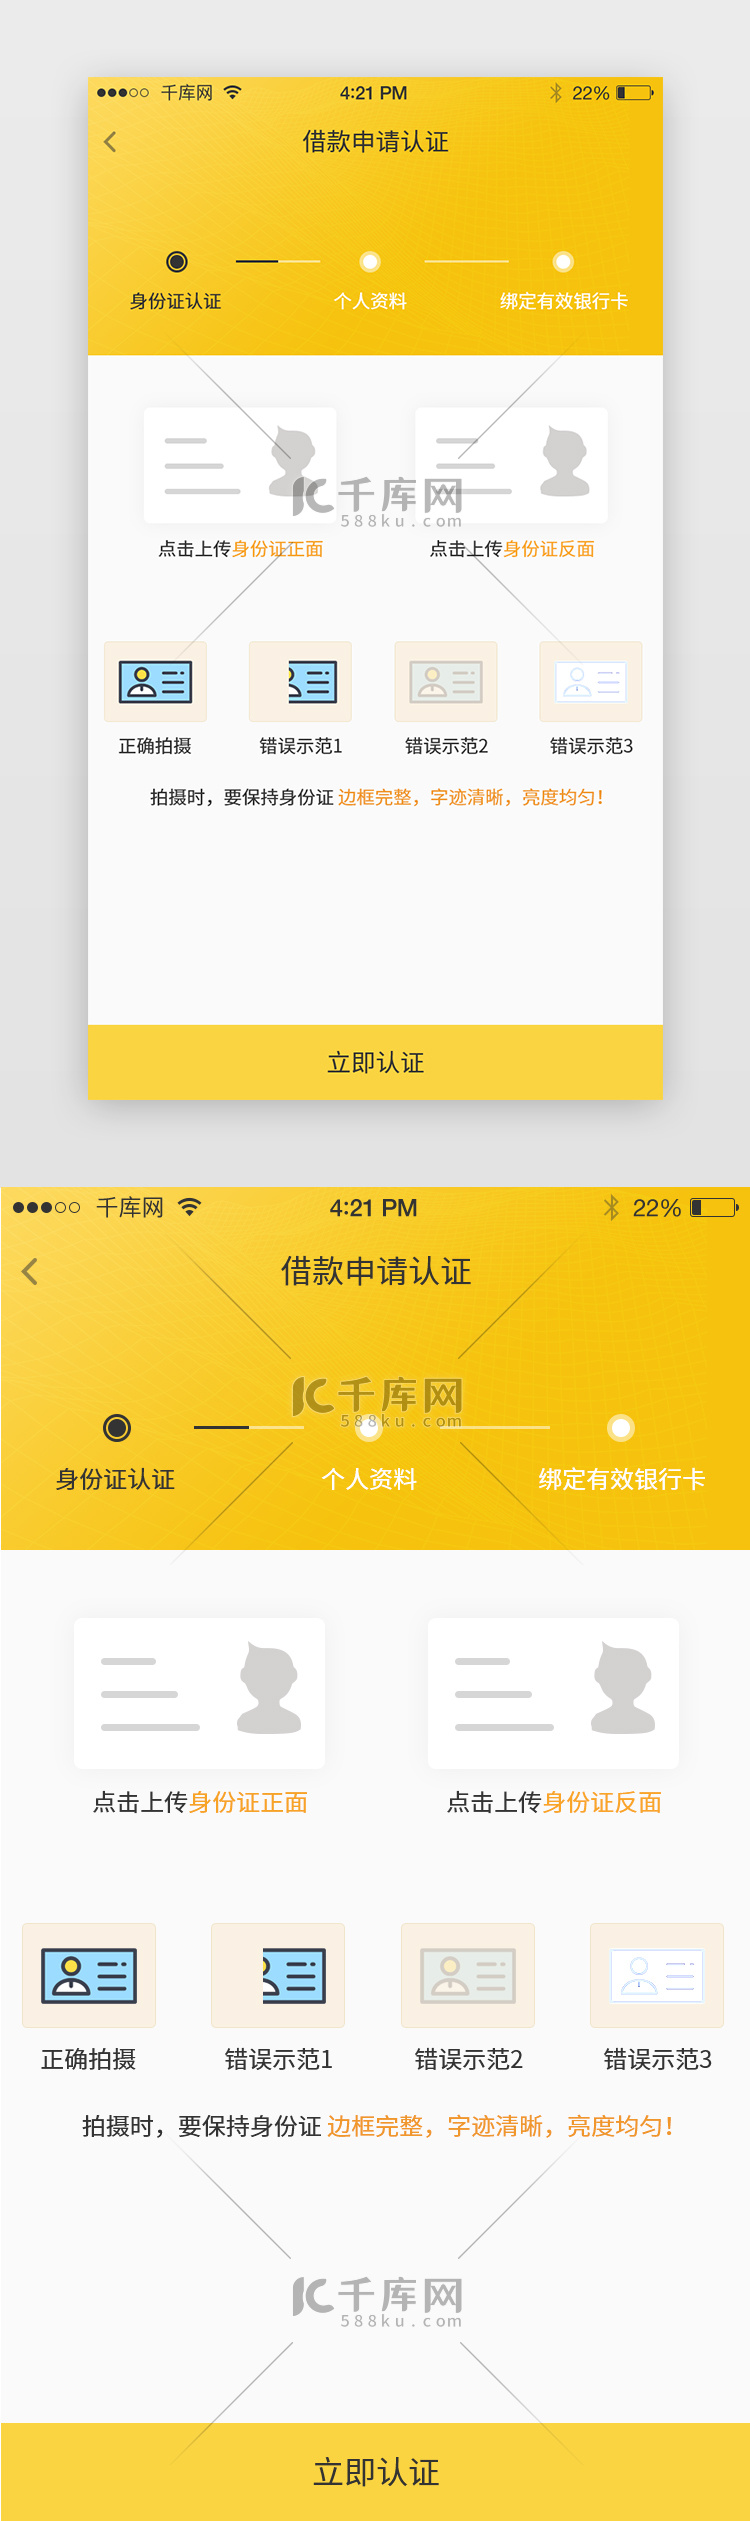 黄色系金融通用身份认证app单页